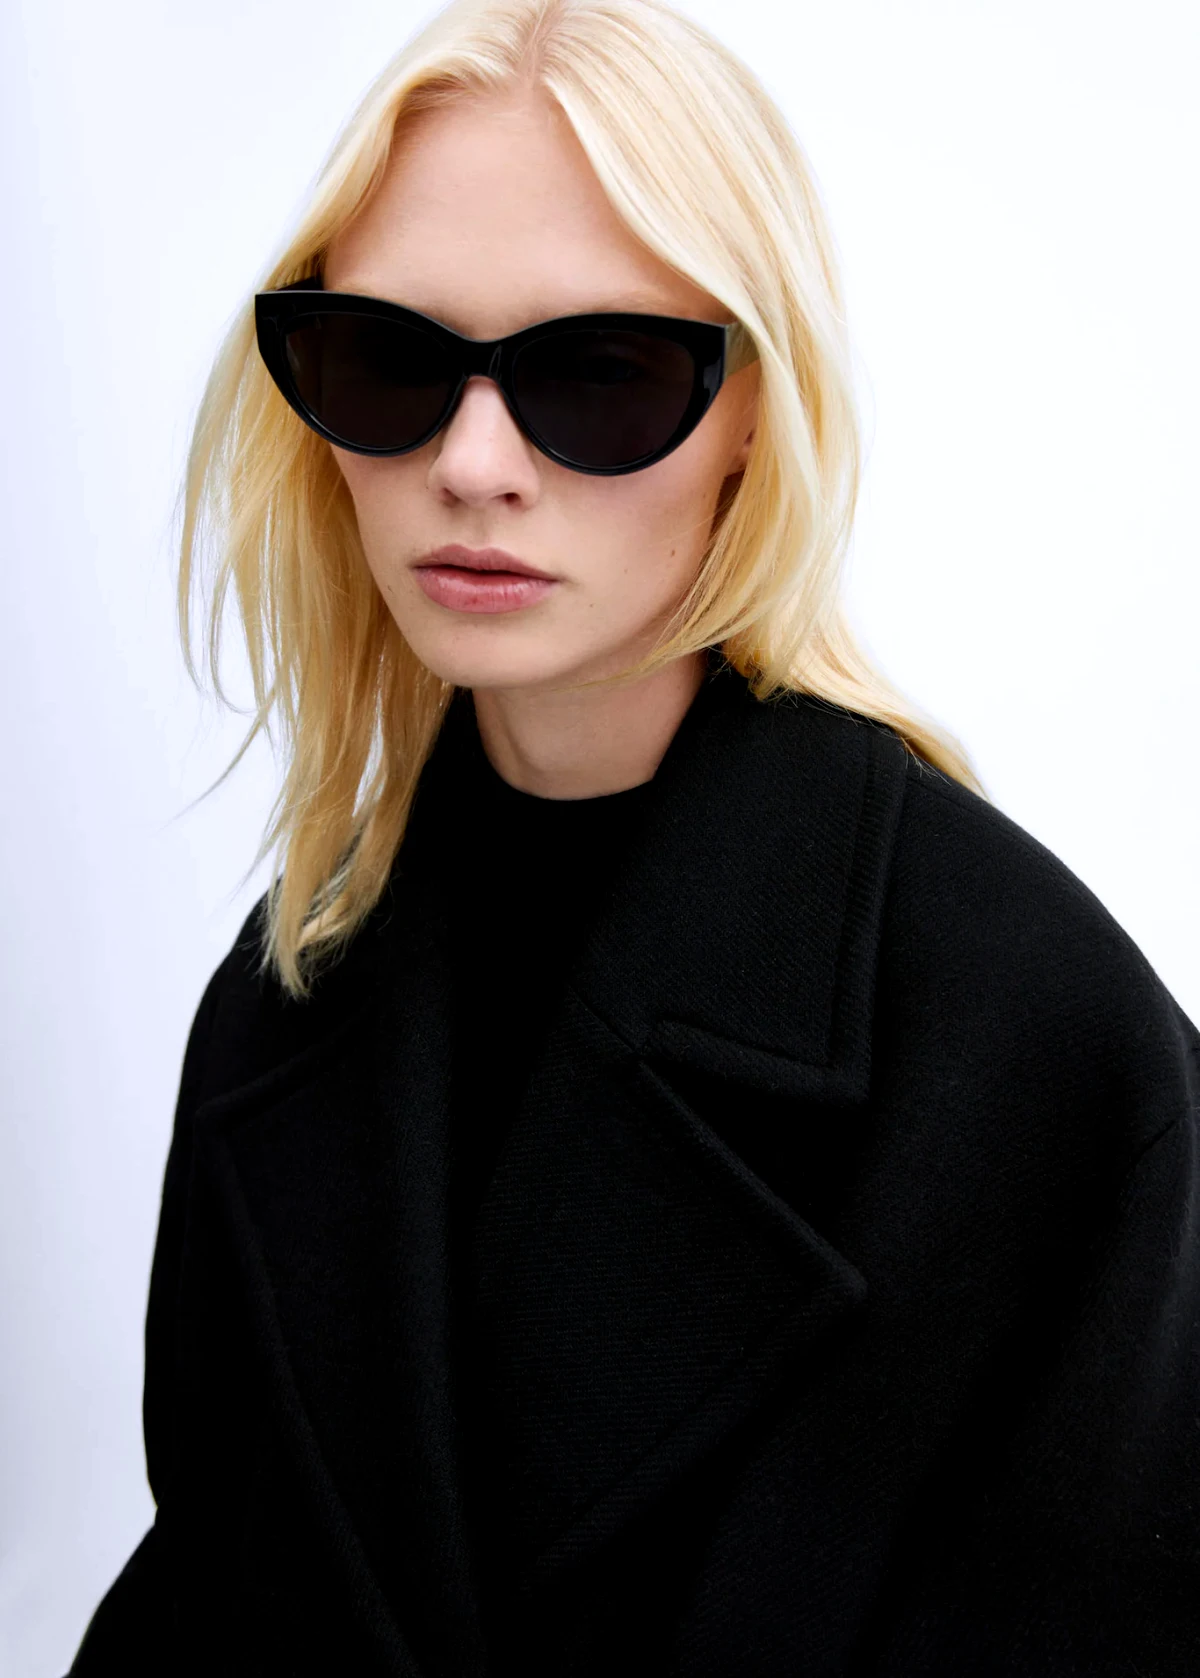 manteau long en laine noir femme blonde lunettes noires